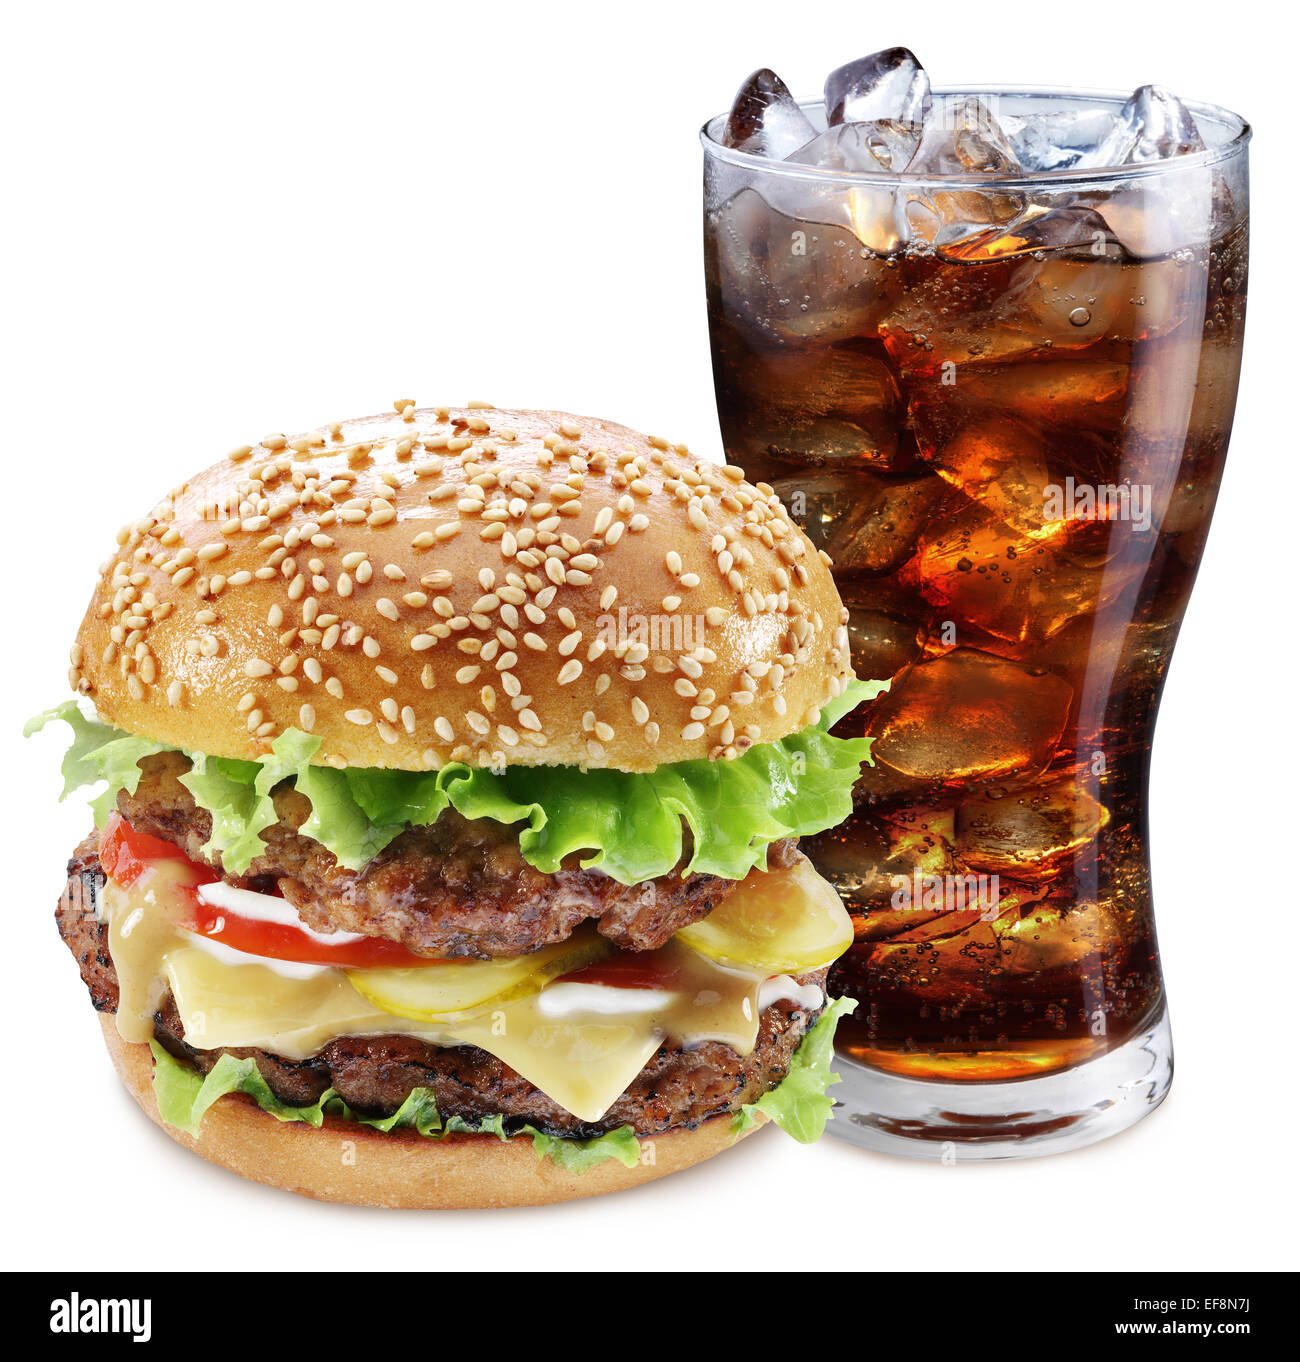 Hamburger und Cola trinken. Speisen zum mitnehmen. Datei enthält Beschneidungspfade. Stockfoto